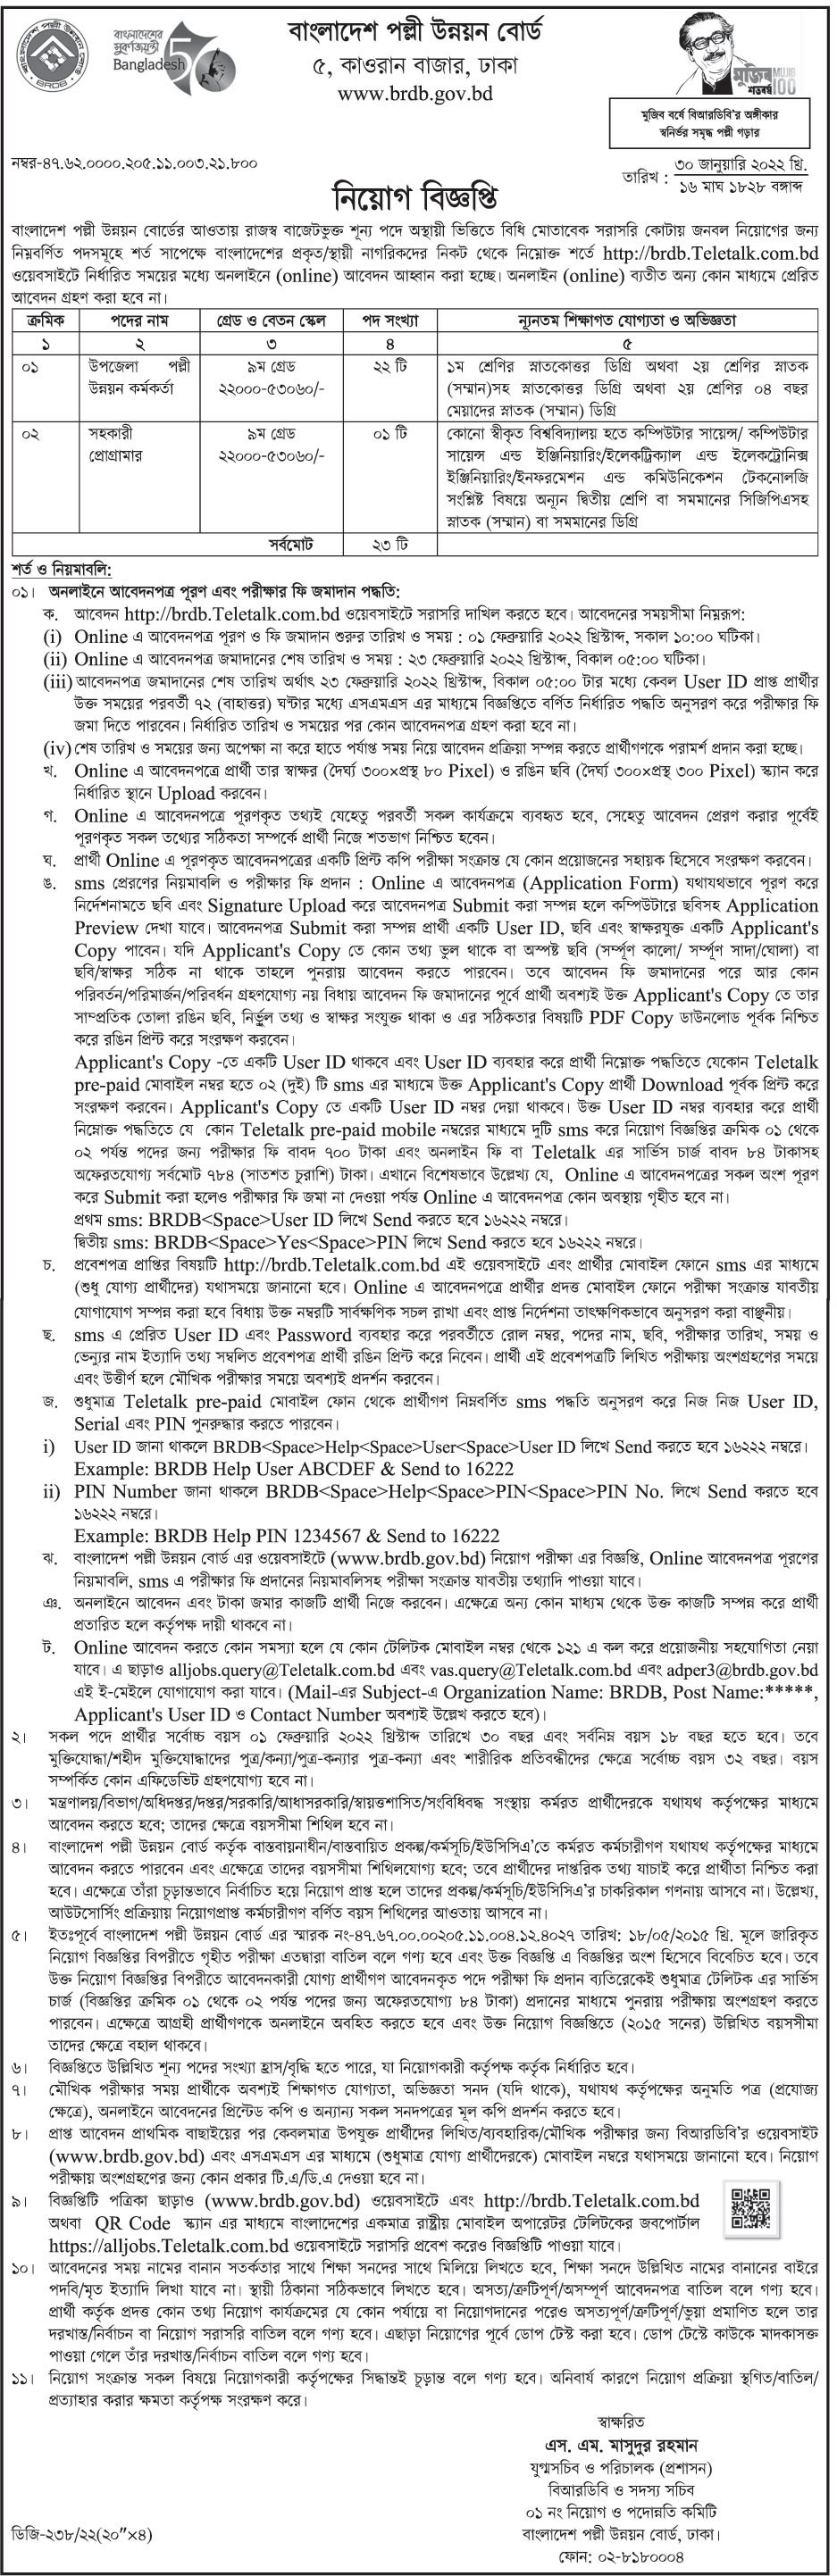 বাংলাদেশ পল্লী উন্নয়ন বোর্ড নিয়োগ ২০২২ - Bangladesh Rural Development Board Job Circular 2022 - Govt Jobs Circular 202